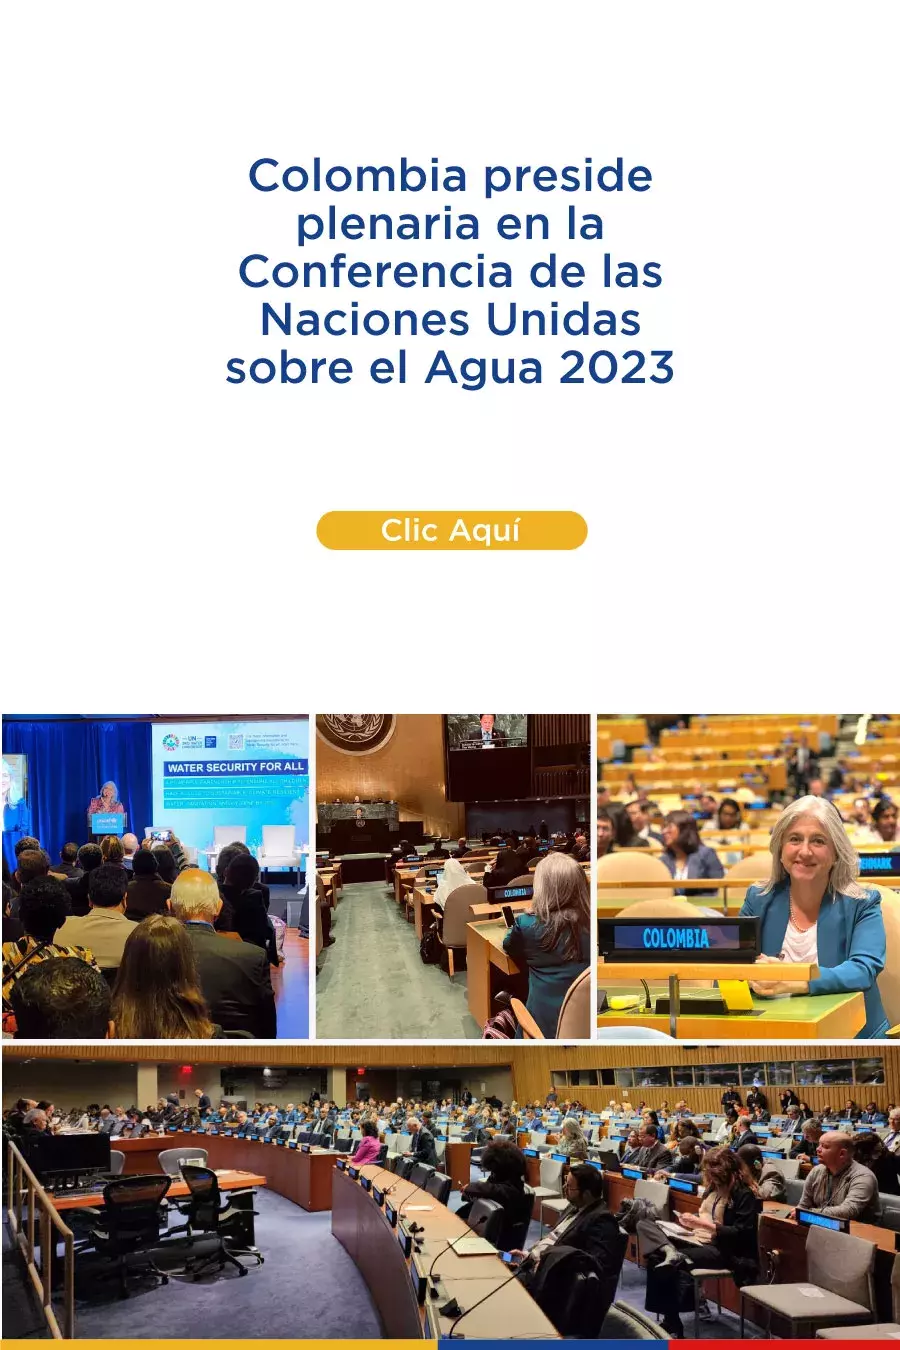 Colombia preside plenaria en la Conferencia de las Naciones Unidas sobre el Agua 2023